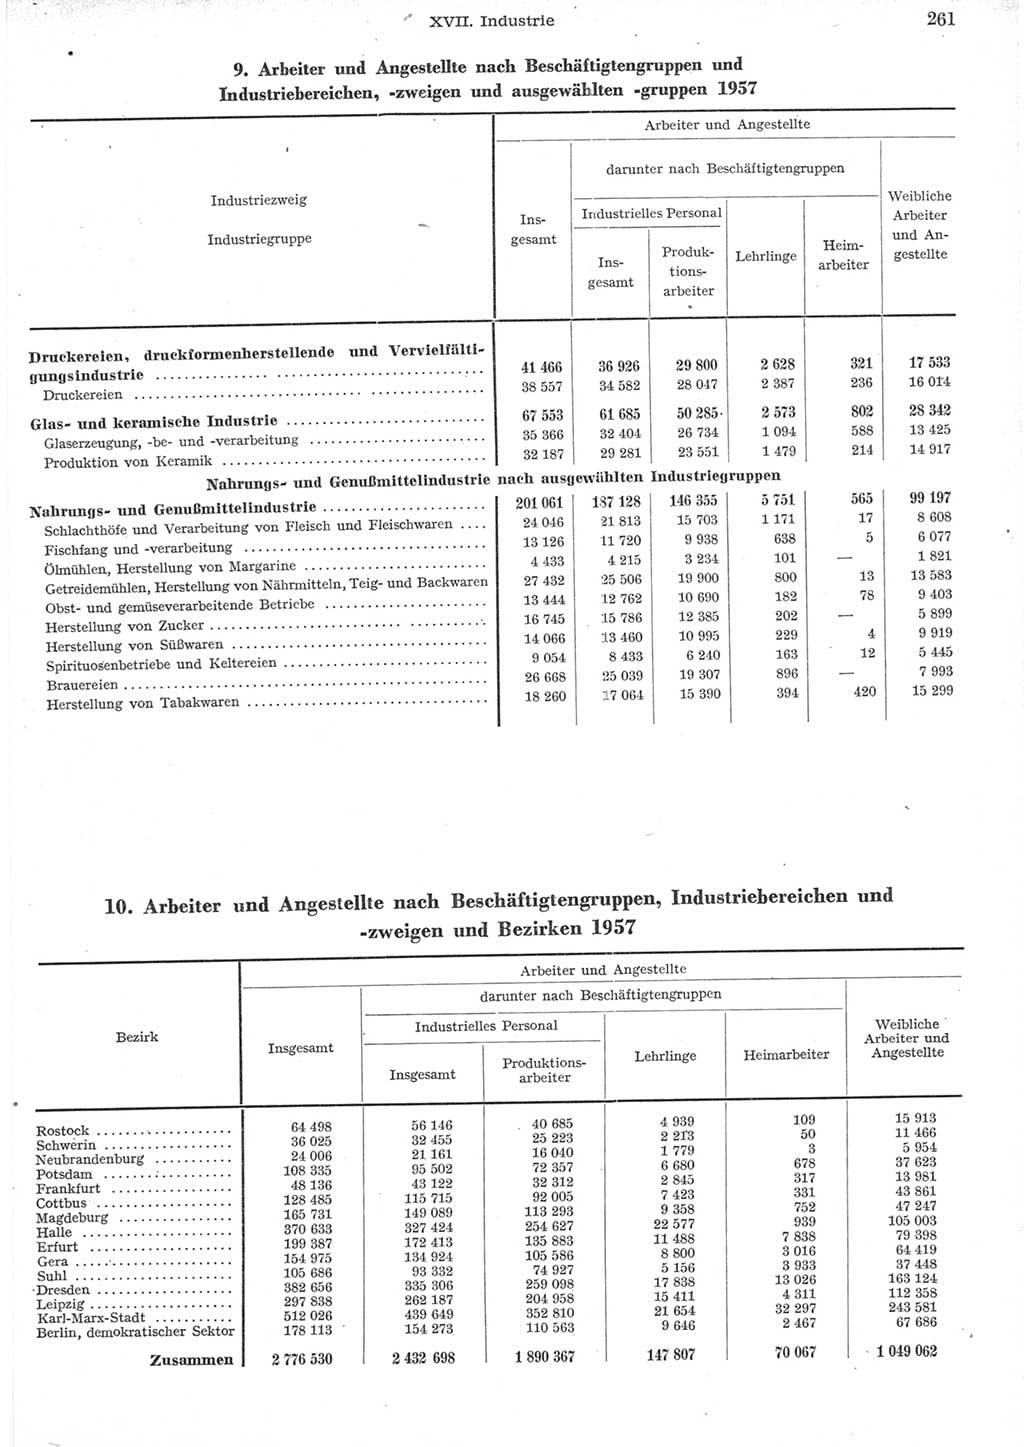 Statistisches Jahrbuch der Deutschen Demokratischen Republik (DDR) 1957, Seite 261 (Stat. Jb. DDR 1957, S. 261)